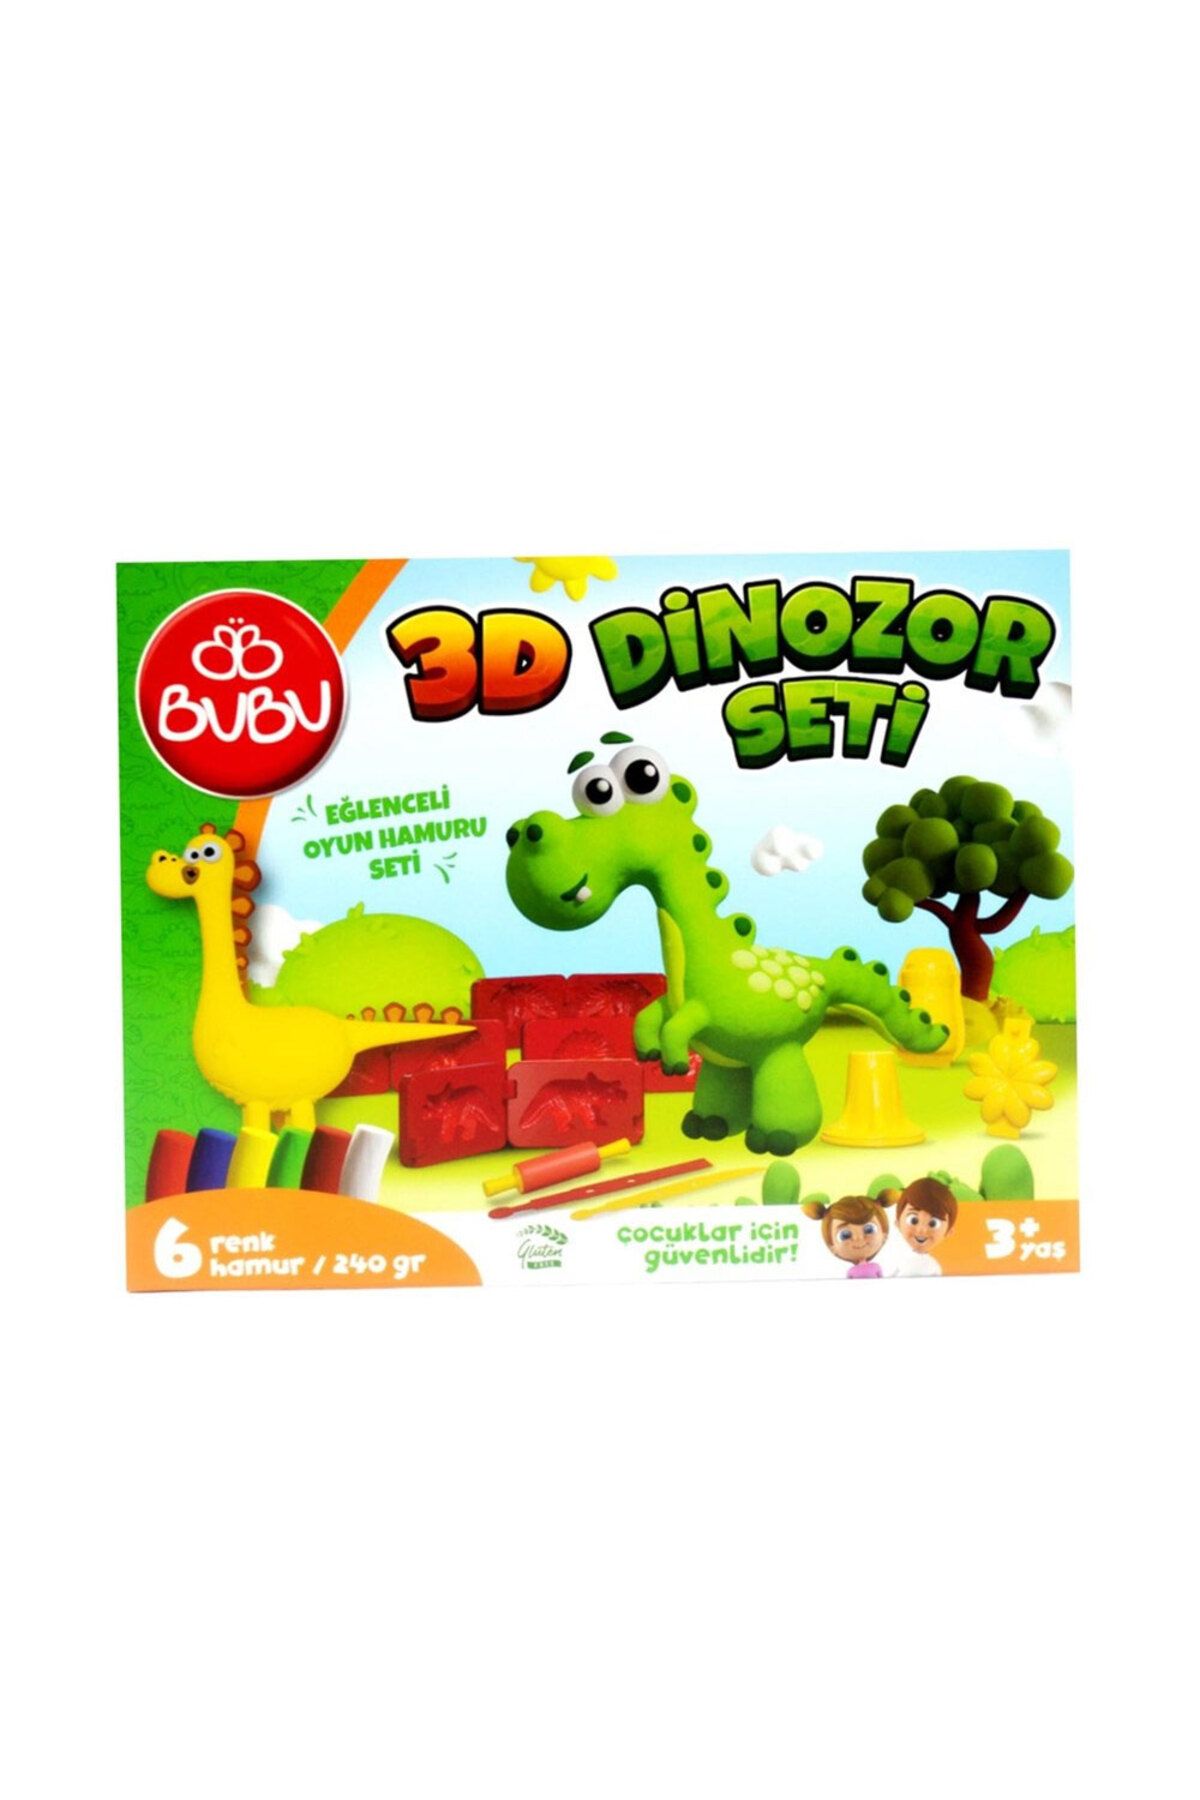 Bubu Bu-Bu Oyun Hamuru Seti 3D Dinozor Oyun Hamuru Kalıpları ve Oyun Hamuru Seti